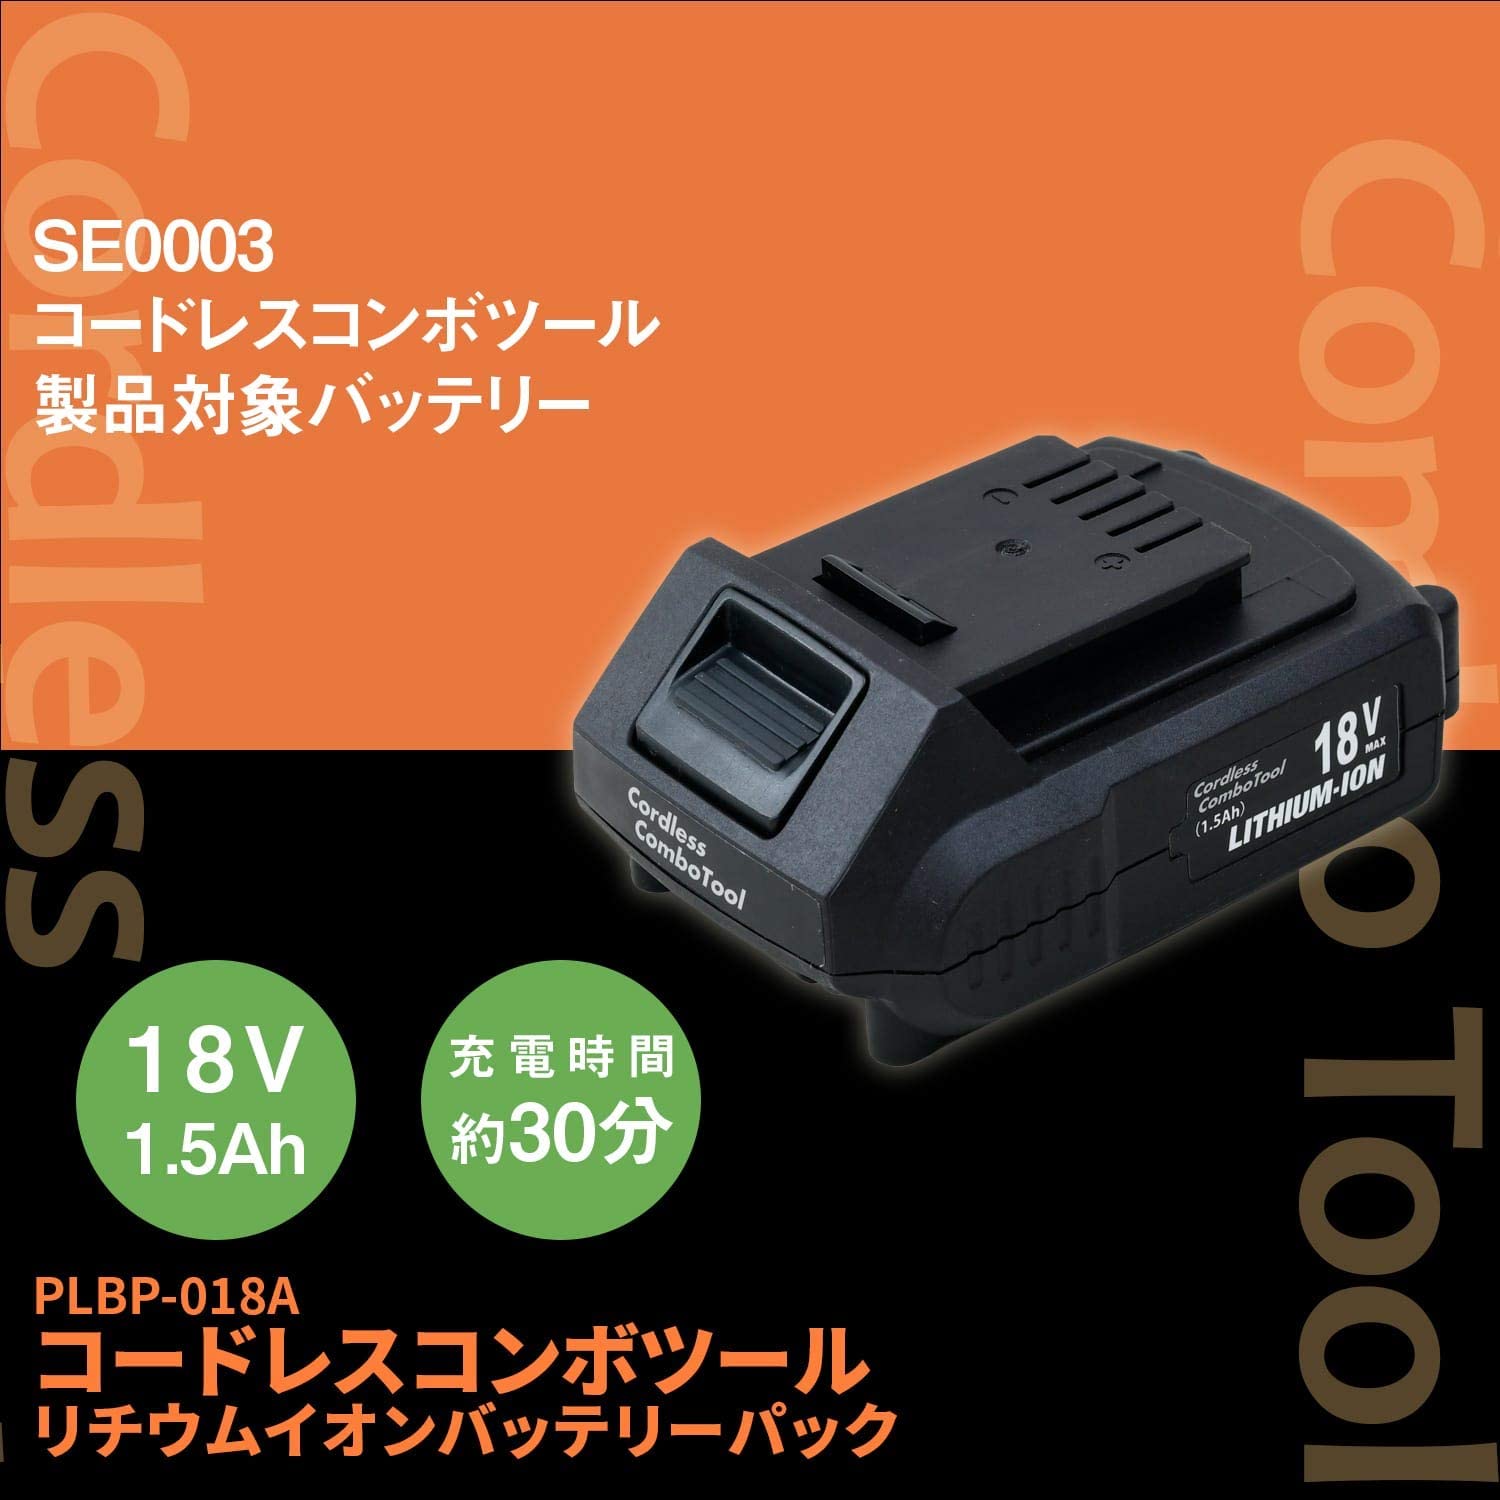 コードレスコンボツール ベーシック 18V電池パック (バッテリー2個) まとめ買いセット SE0003-02/PLBP-018A スマイル